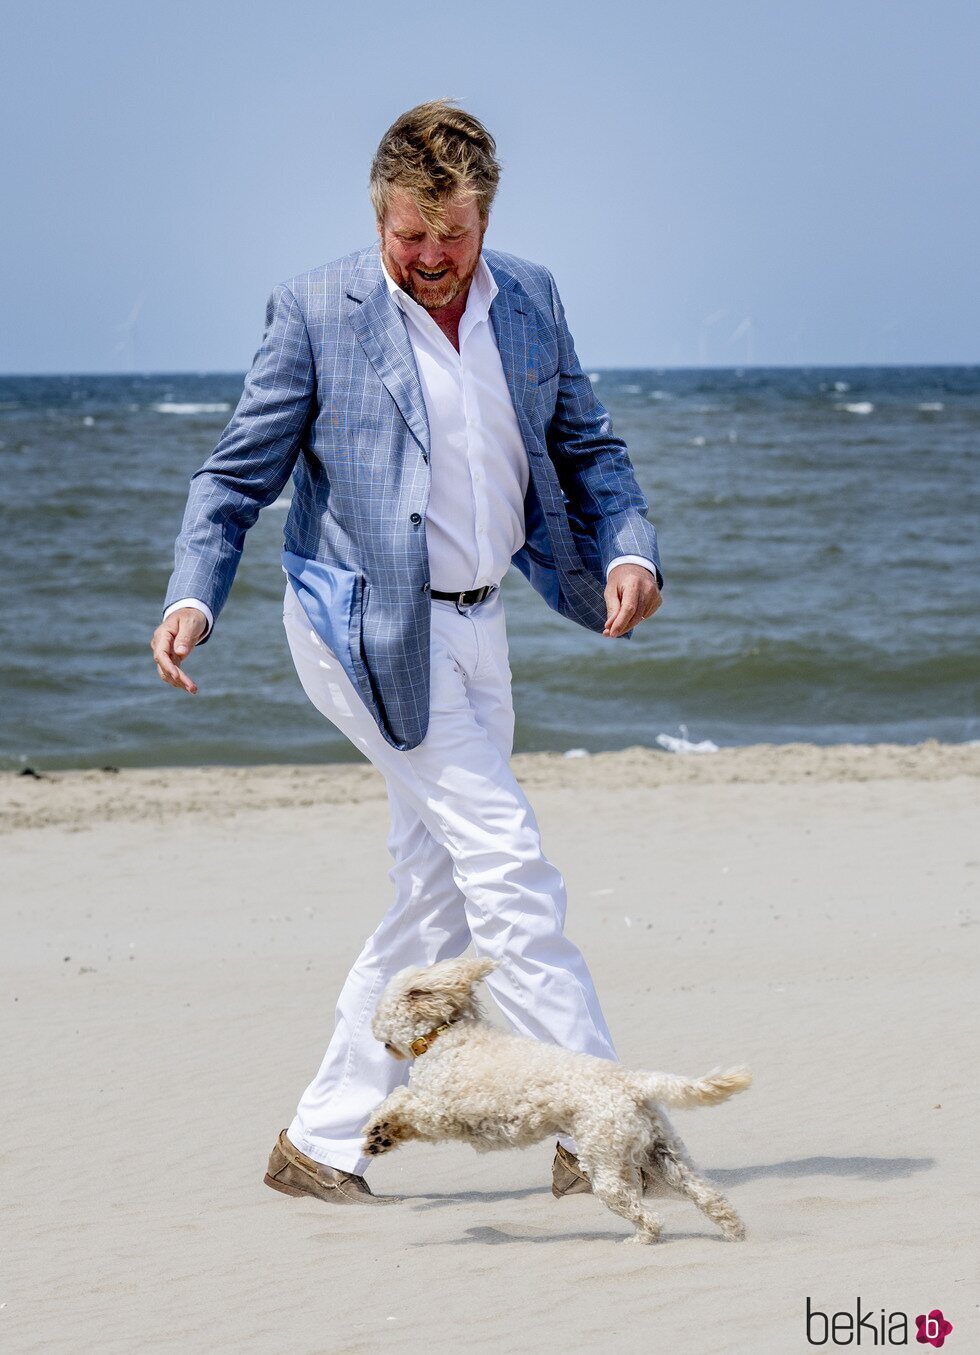 Guillermo Alejandro de Holanda y su perro Mambo en su posado de verano en la playa